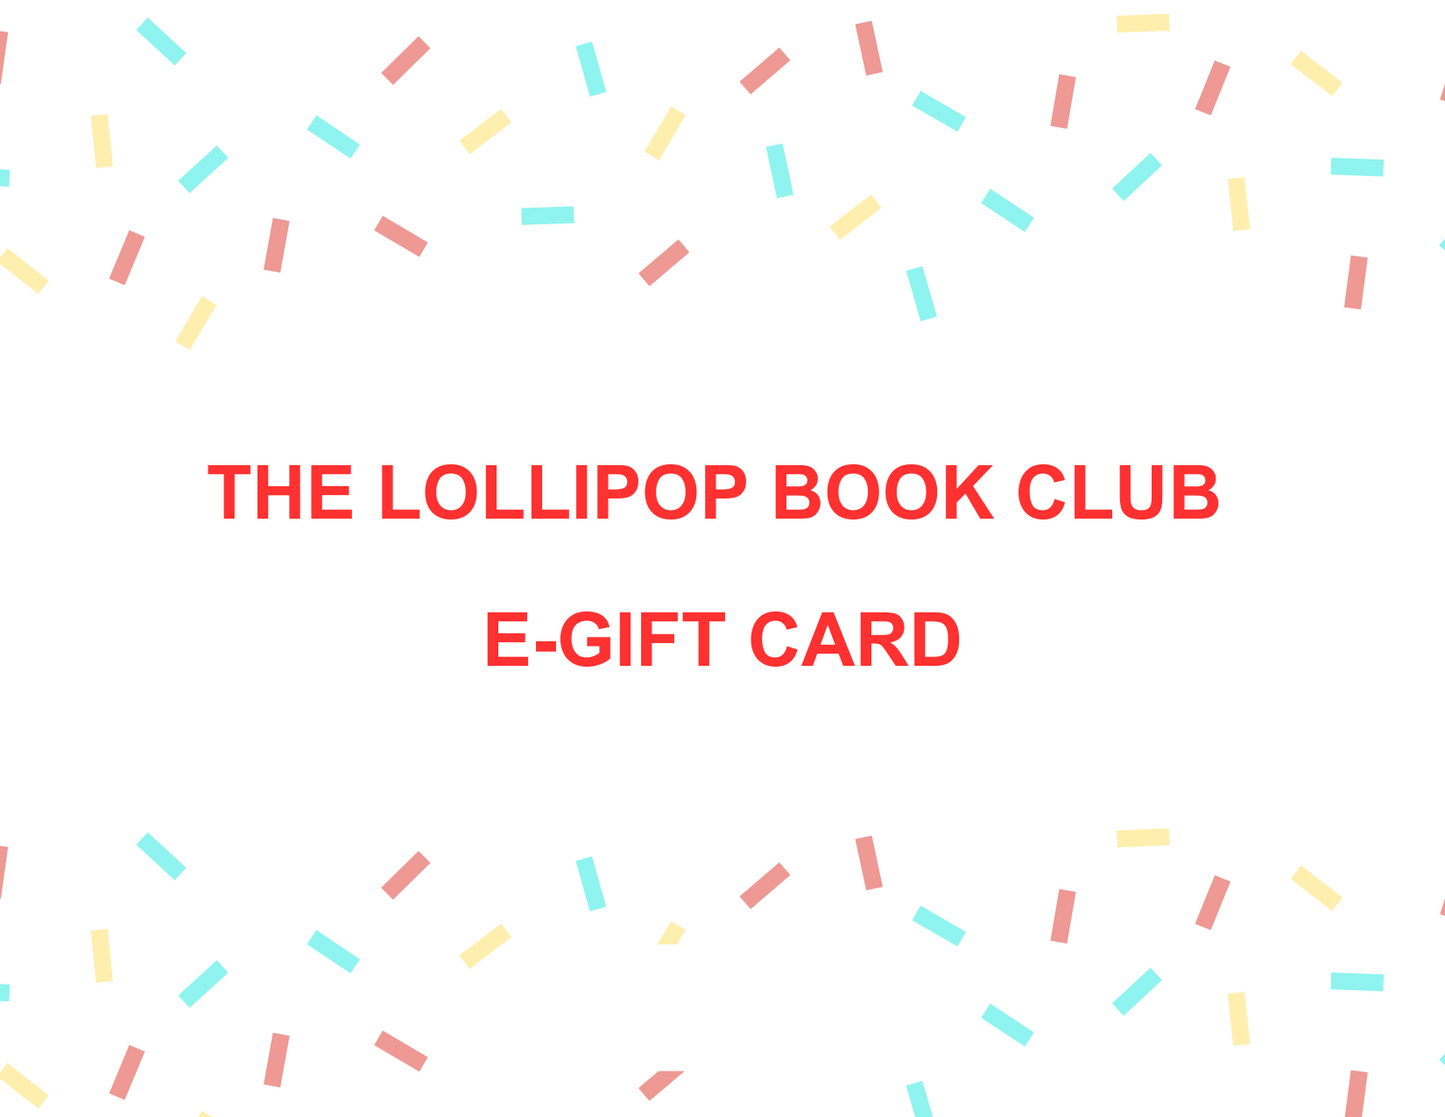 The Lollipop Book Club e-Gift Card